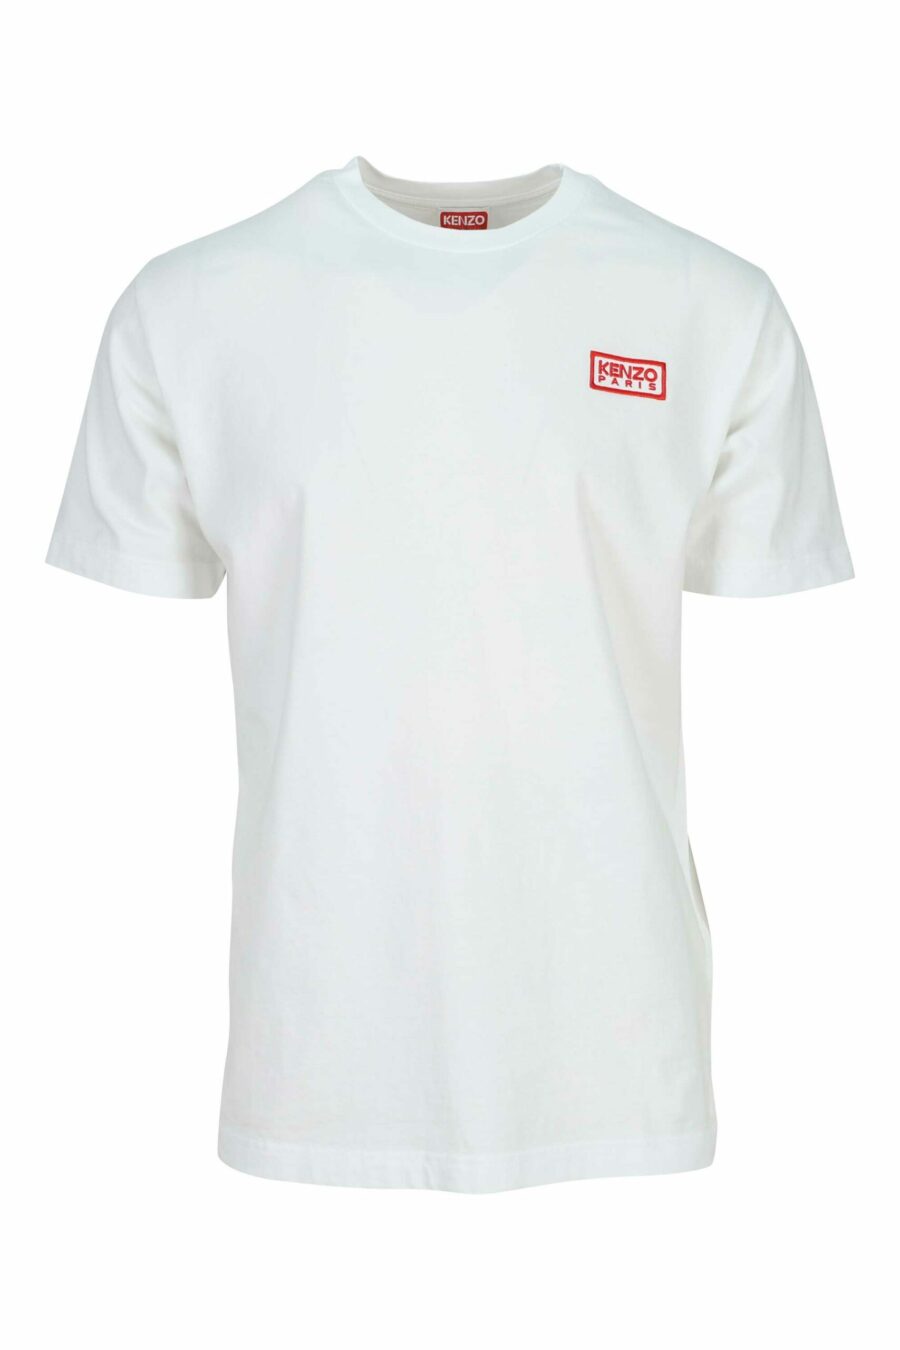 Camiseta blanca con minilogo "KP classic" - 3612230624641 scaled